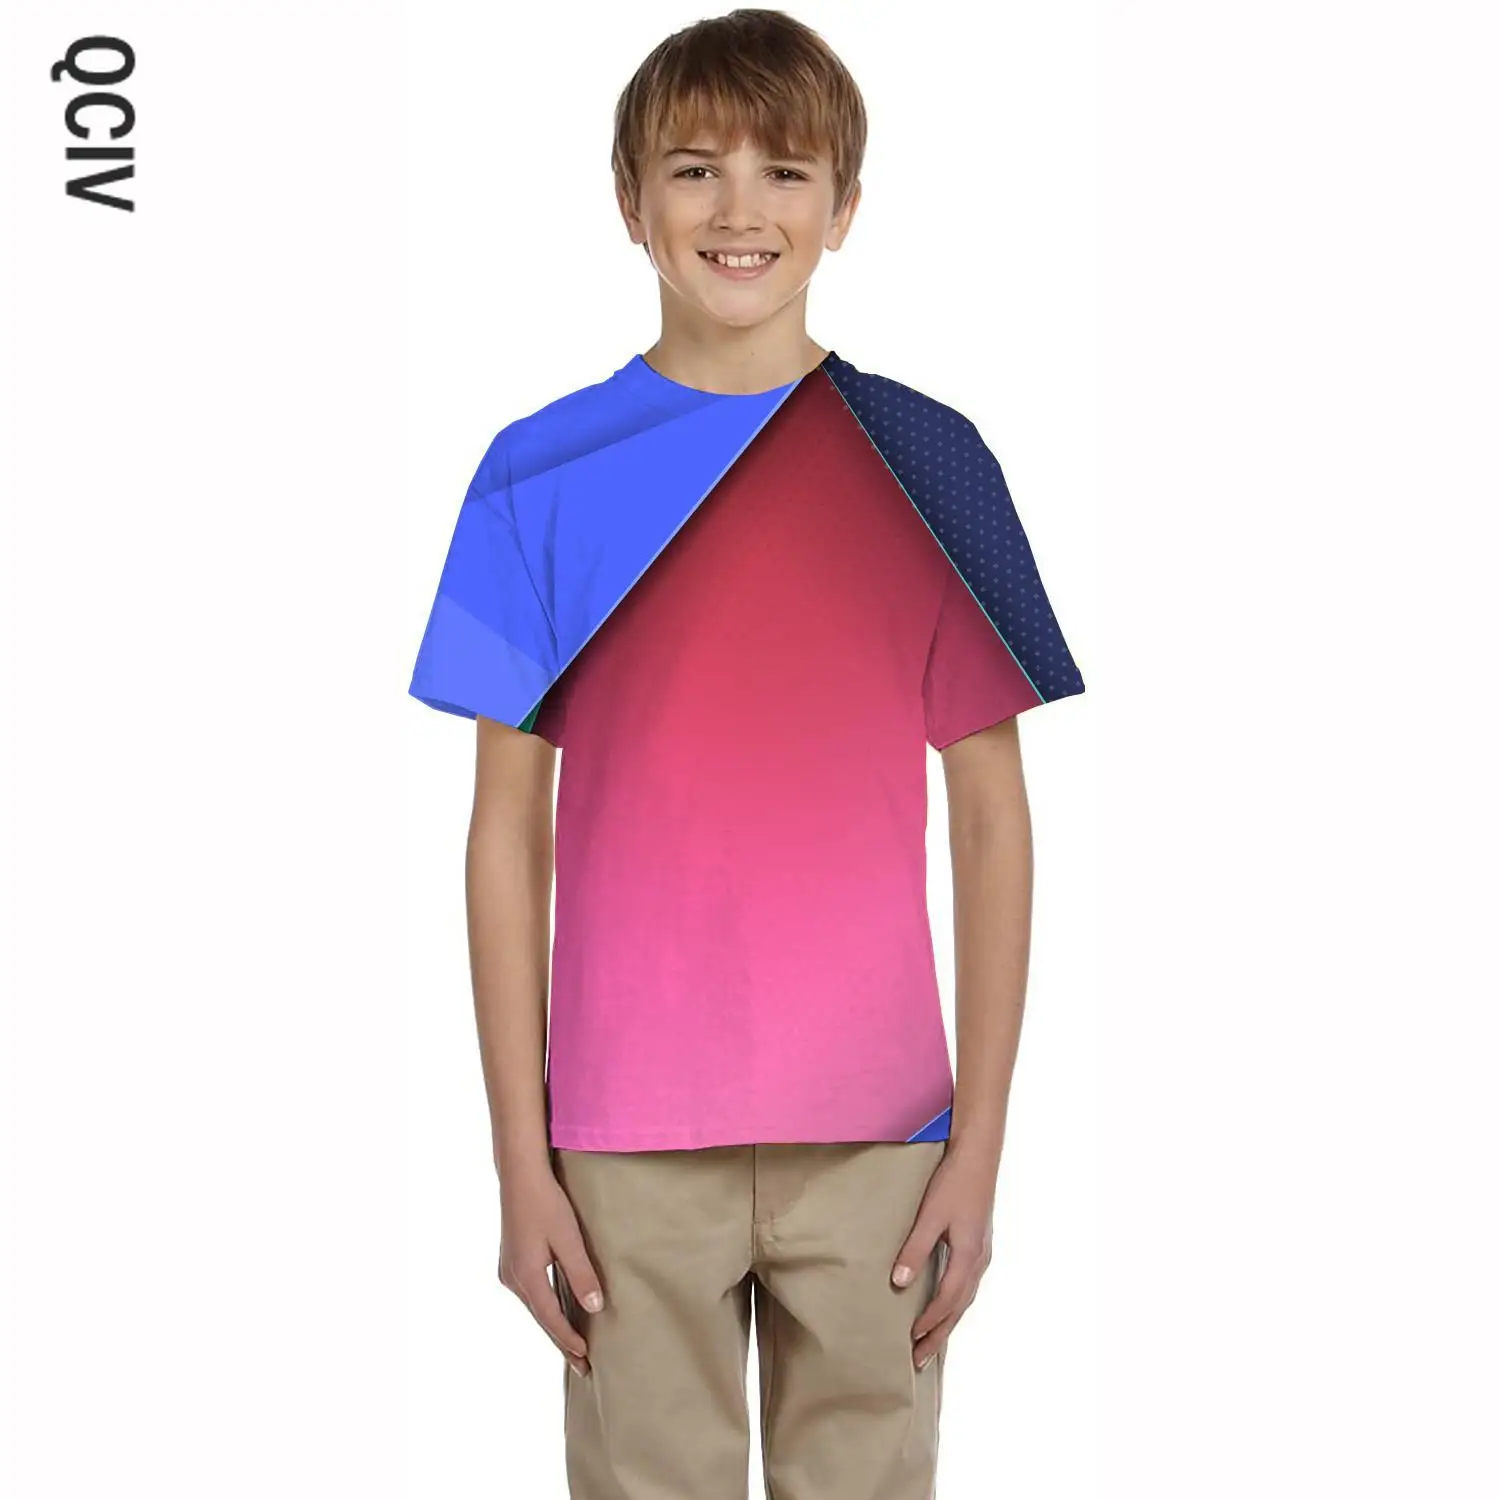 

QCIV Brand Colorful T-shirt boy Geometry T-shirts 3d Graphics Tshirt Printed Creativity Tshirts Casual kids Clothing Hip hop